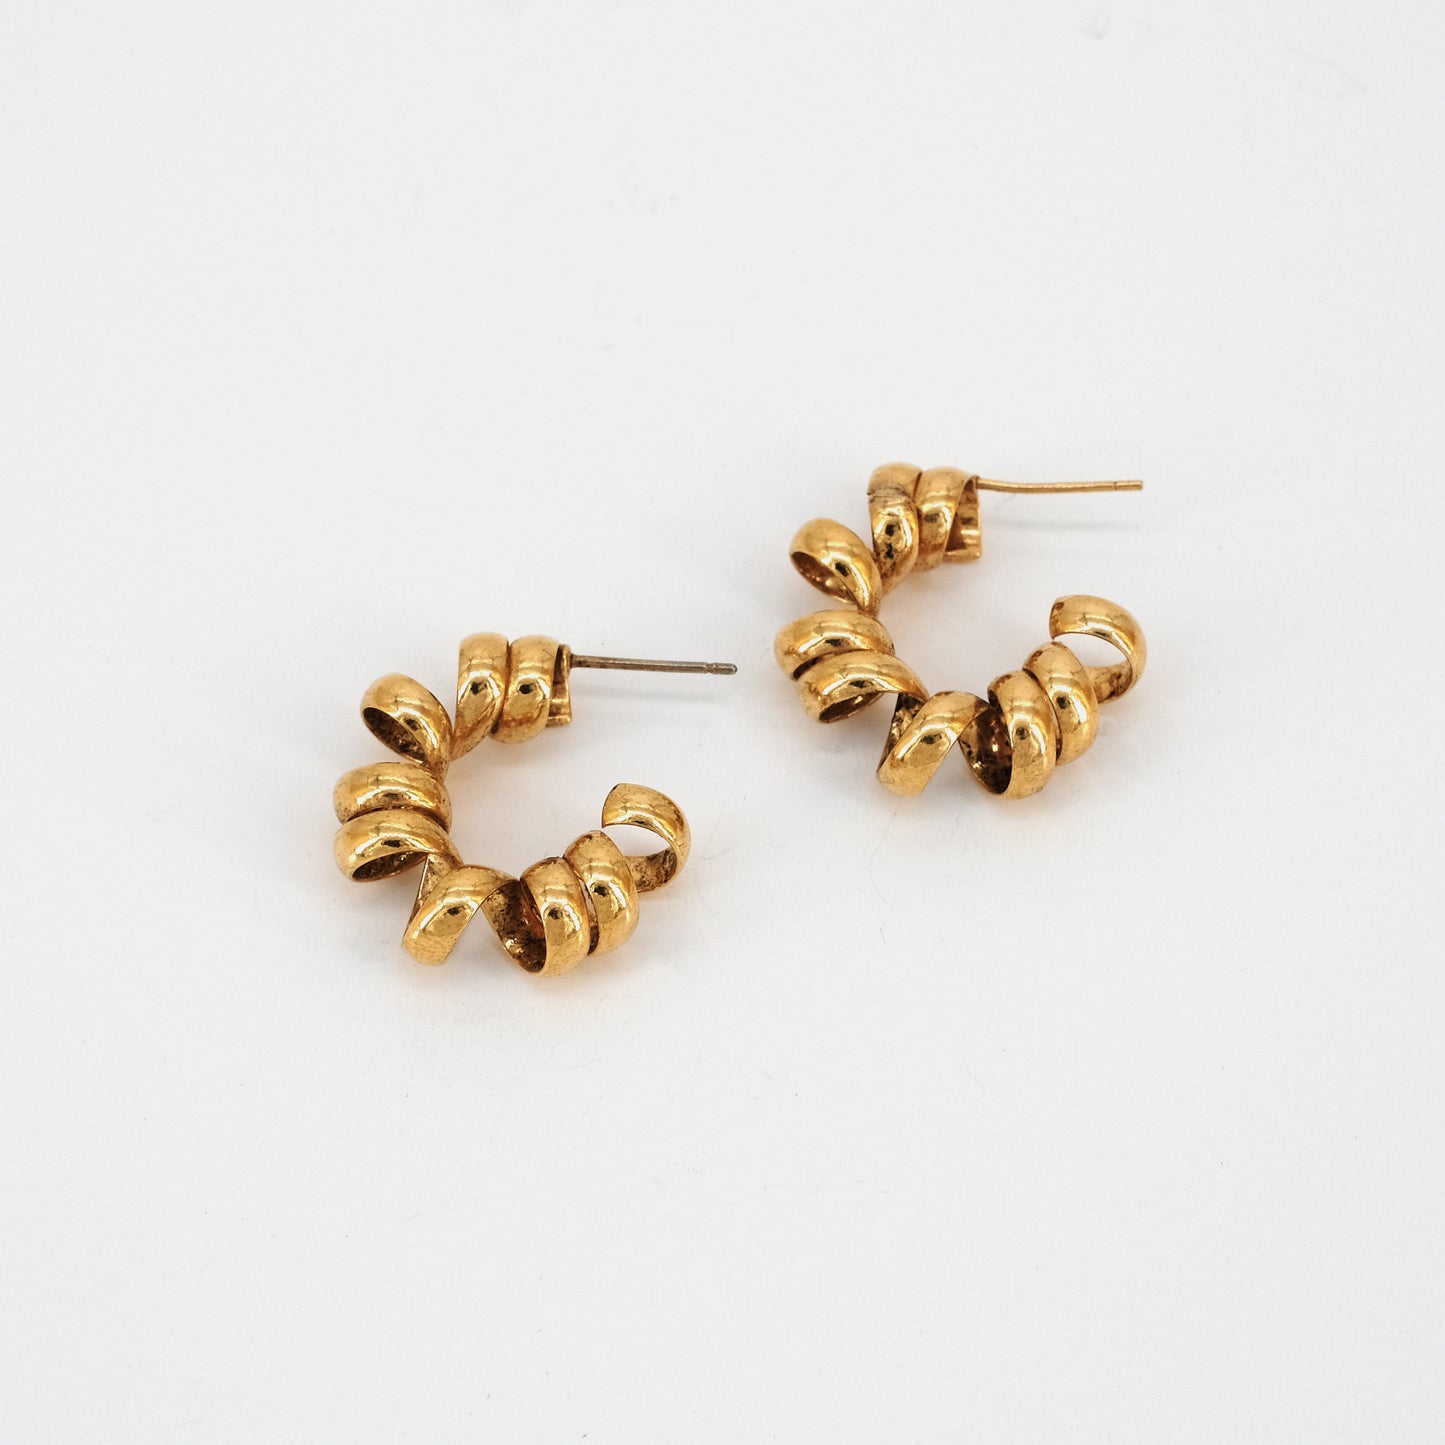 Fang earrings